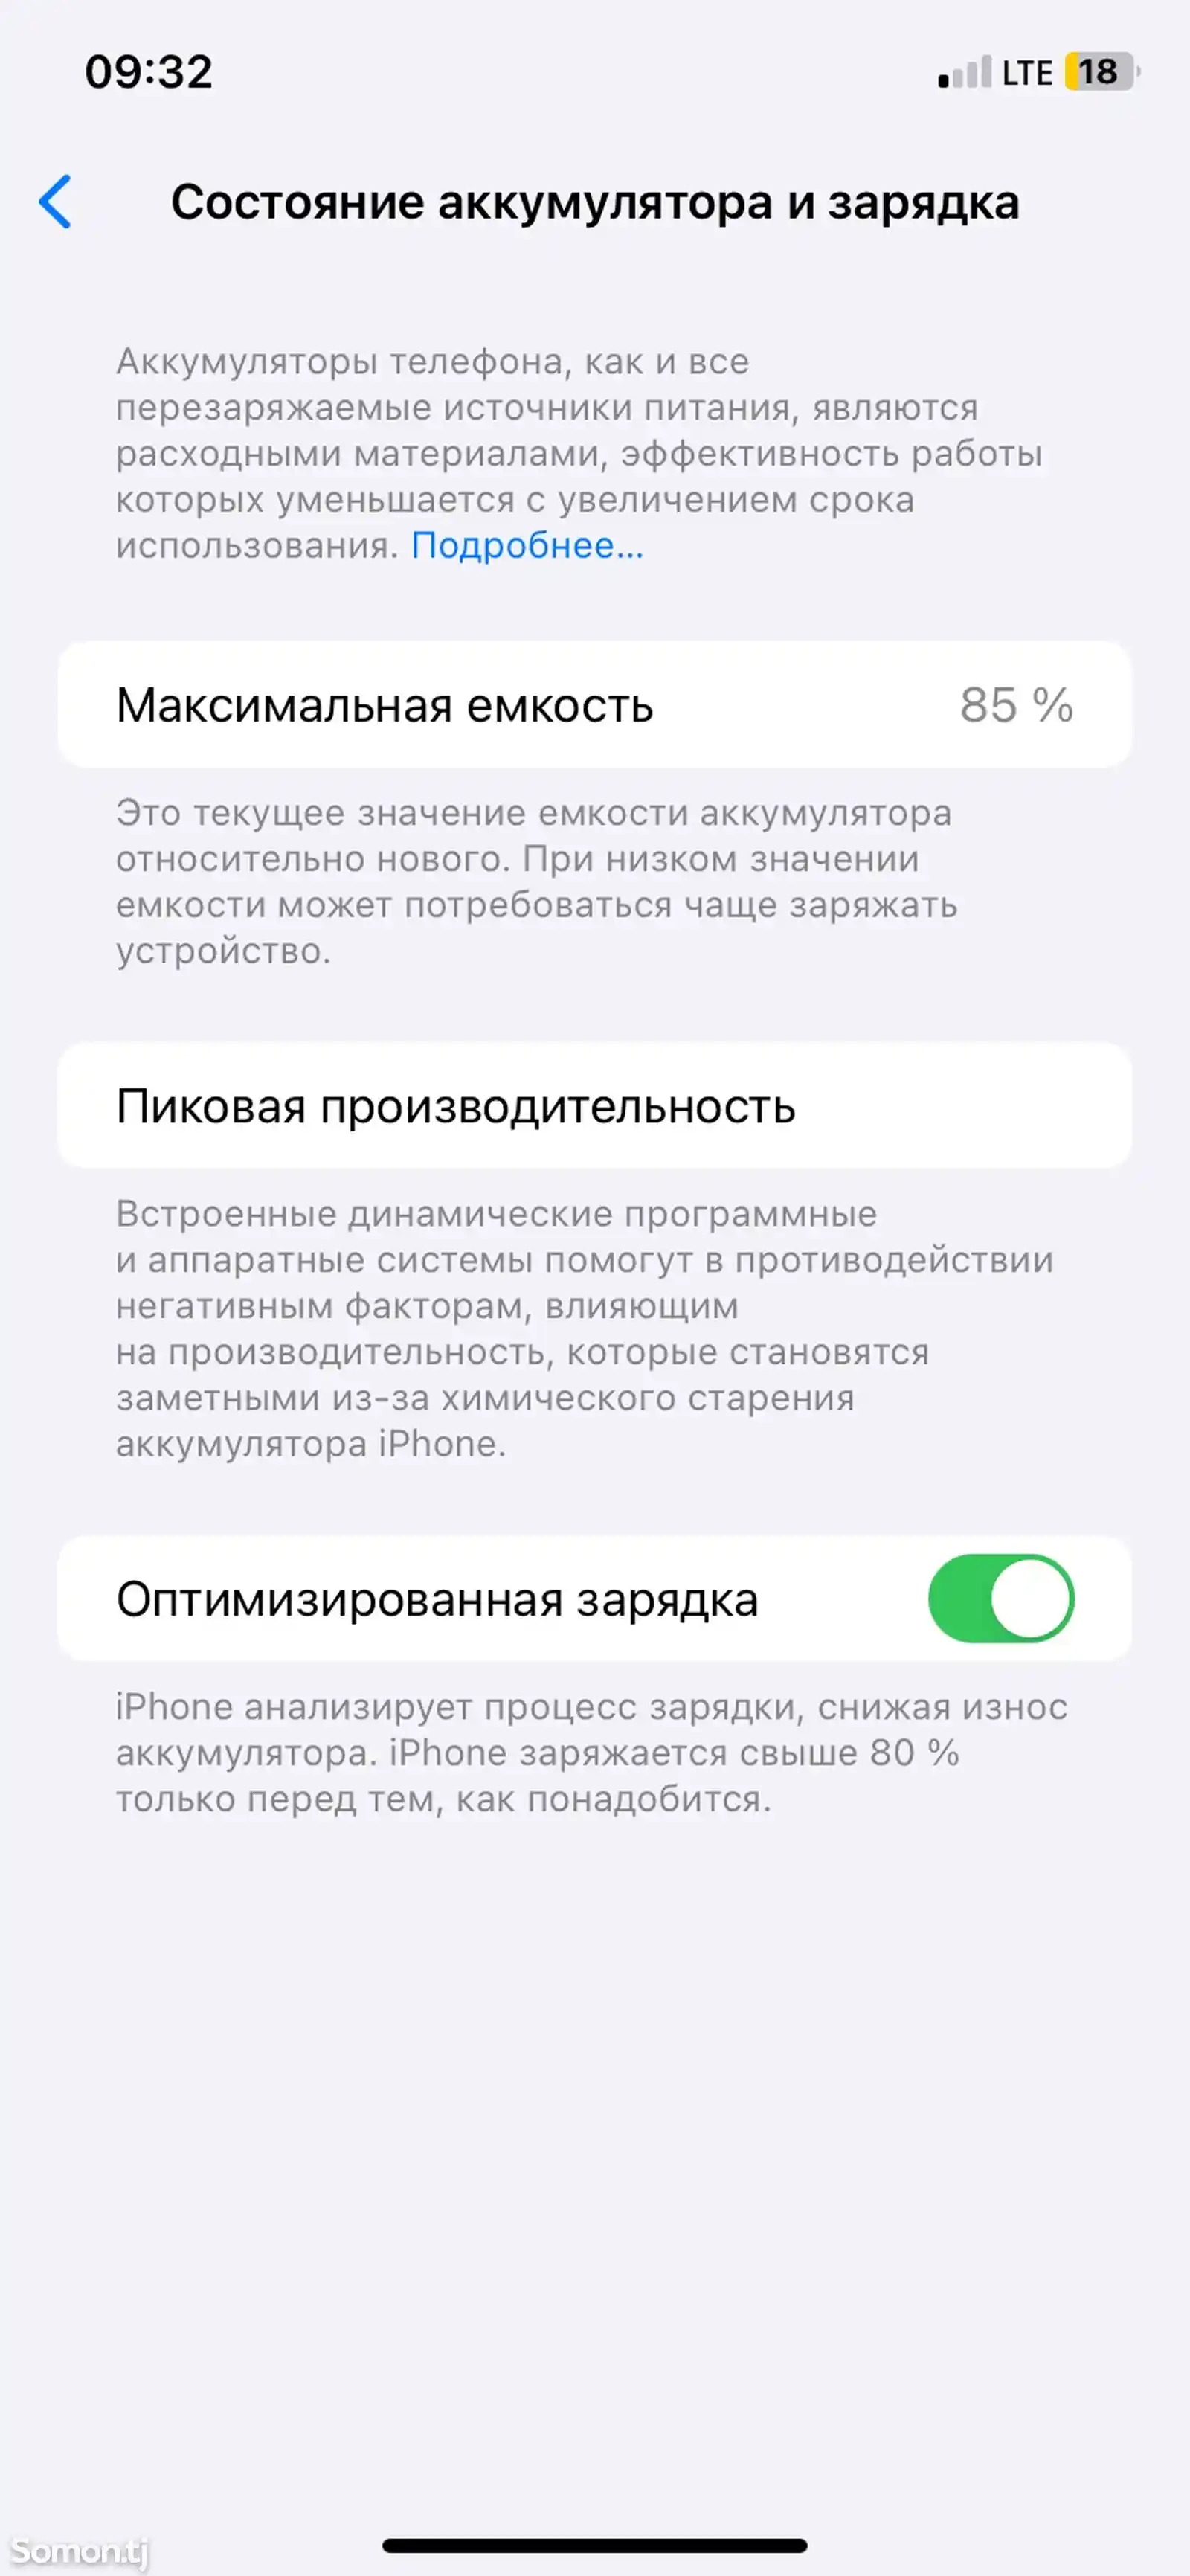 Apple iPhone 11, 64 gb, Green-3